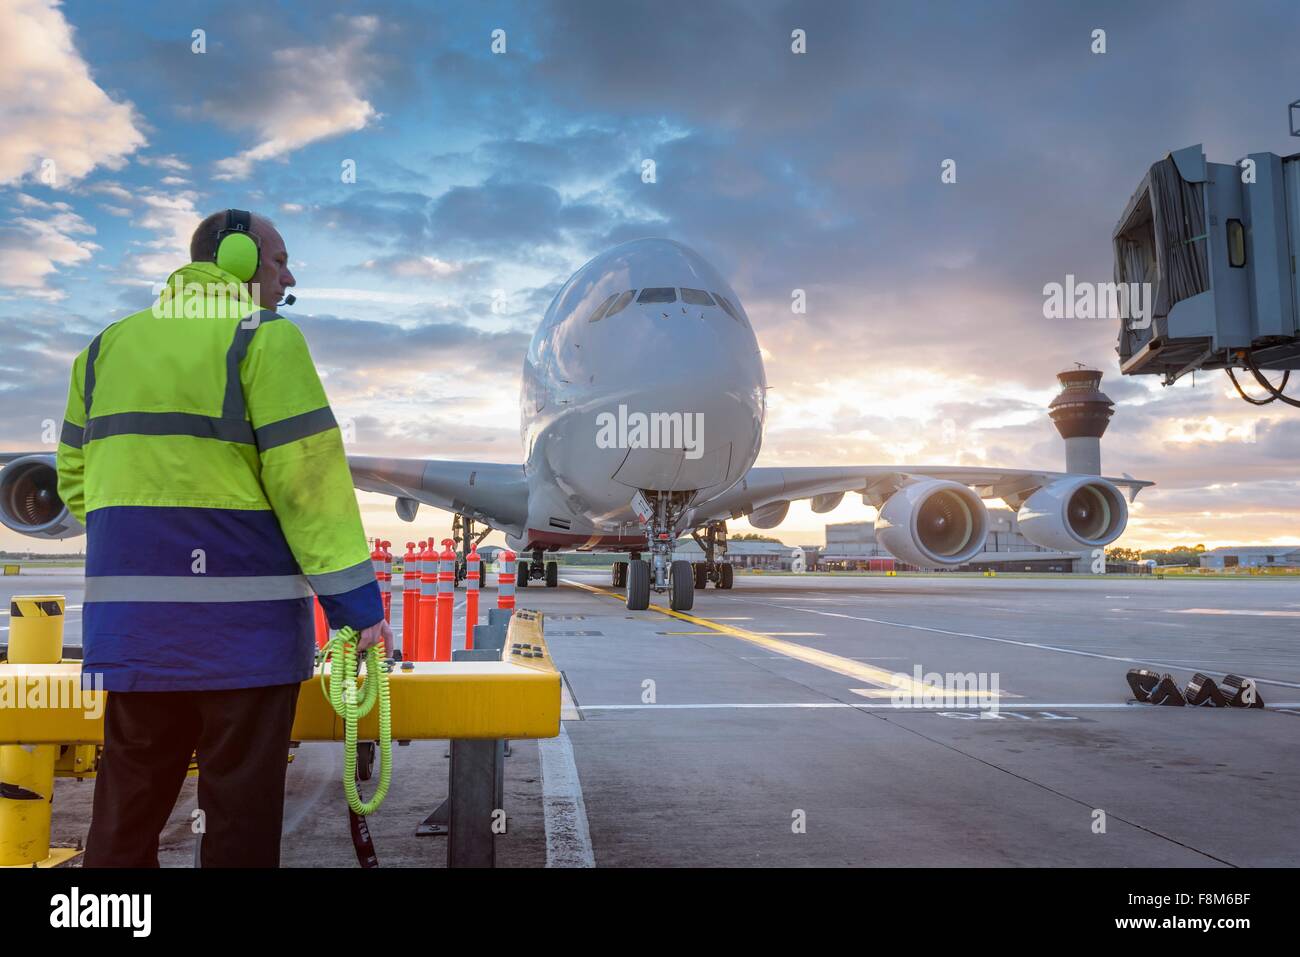 Ingeniero jefe viendo llegar aviones A380 en el stand en el aeropuerto Foto de stock